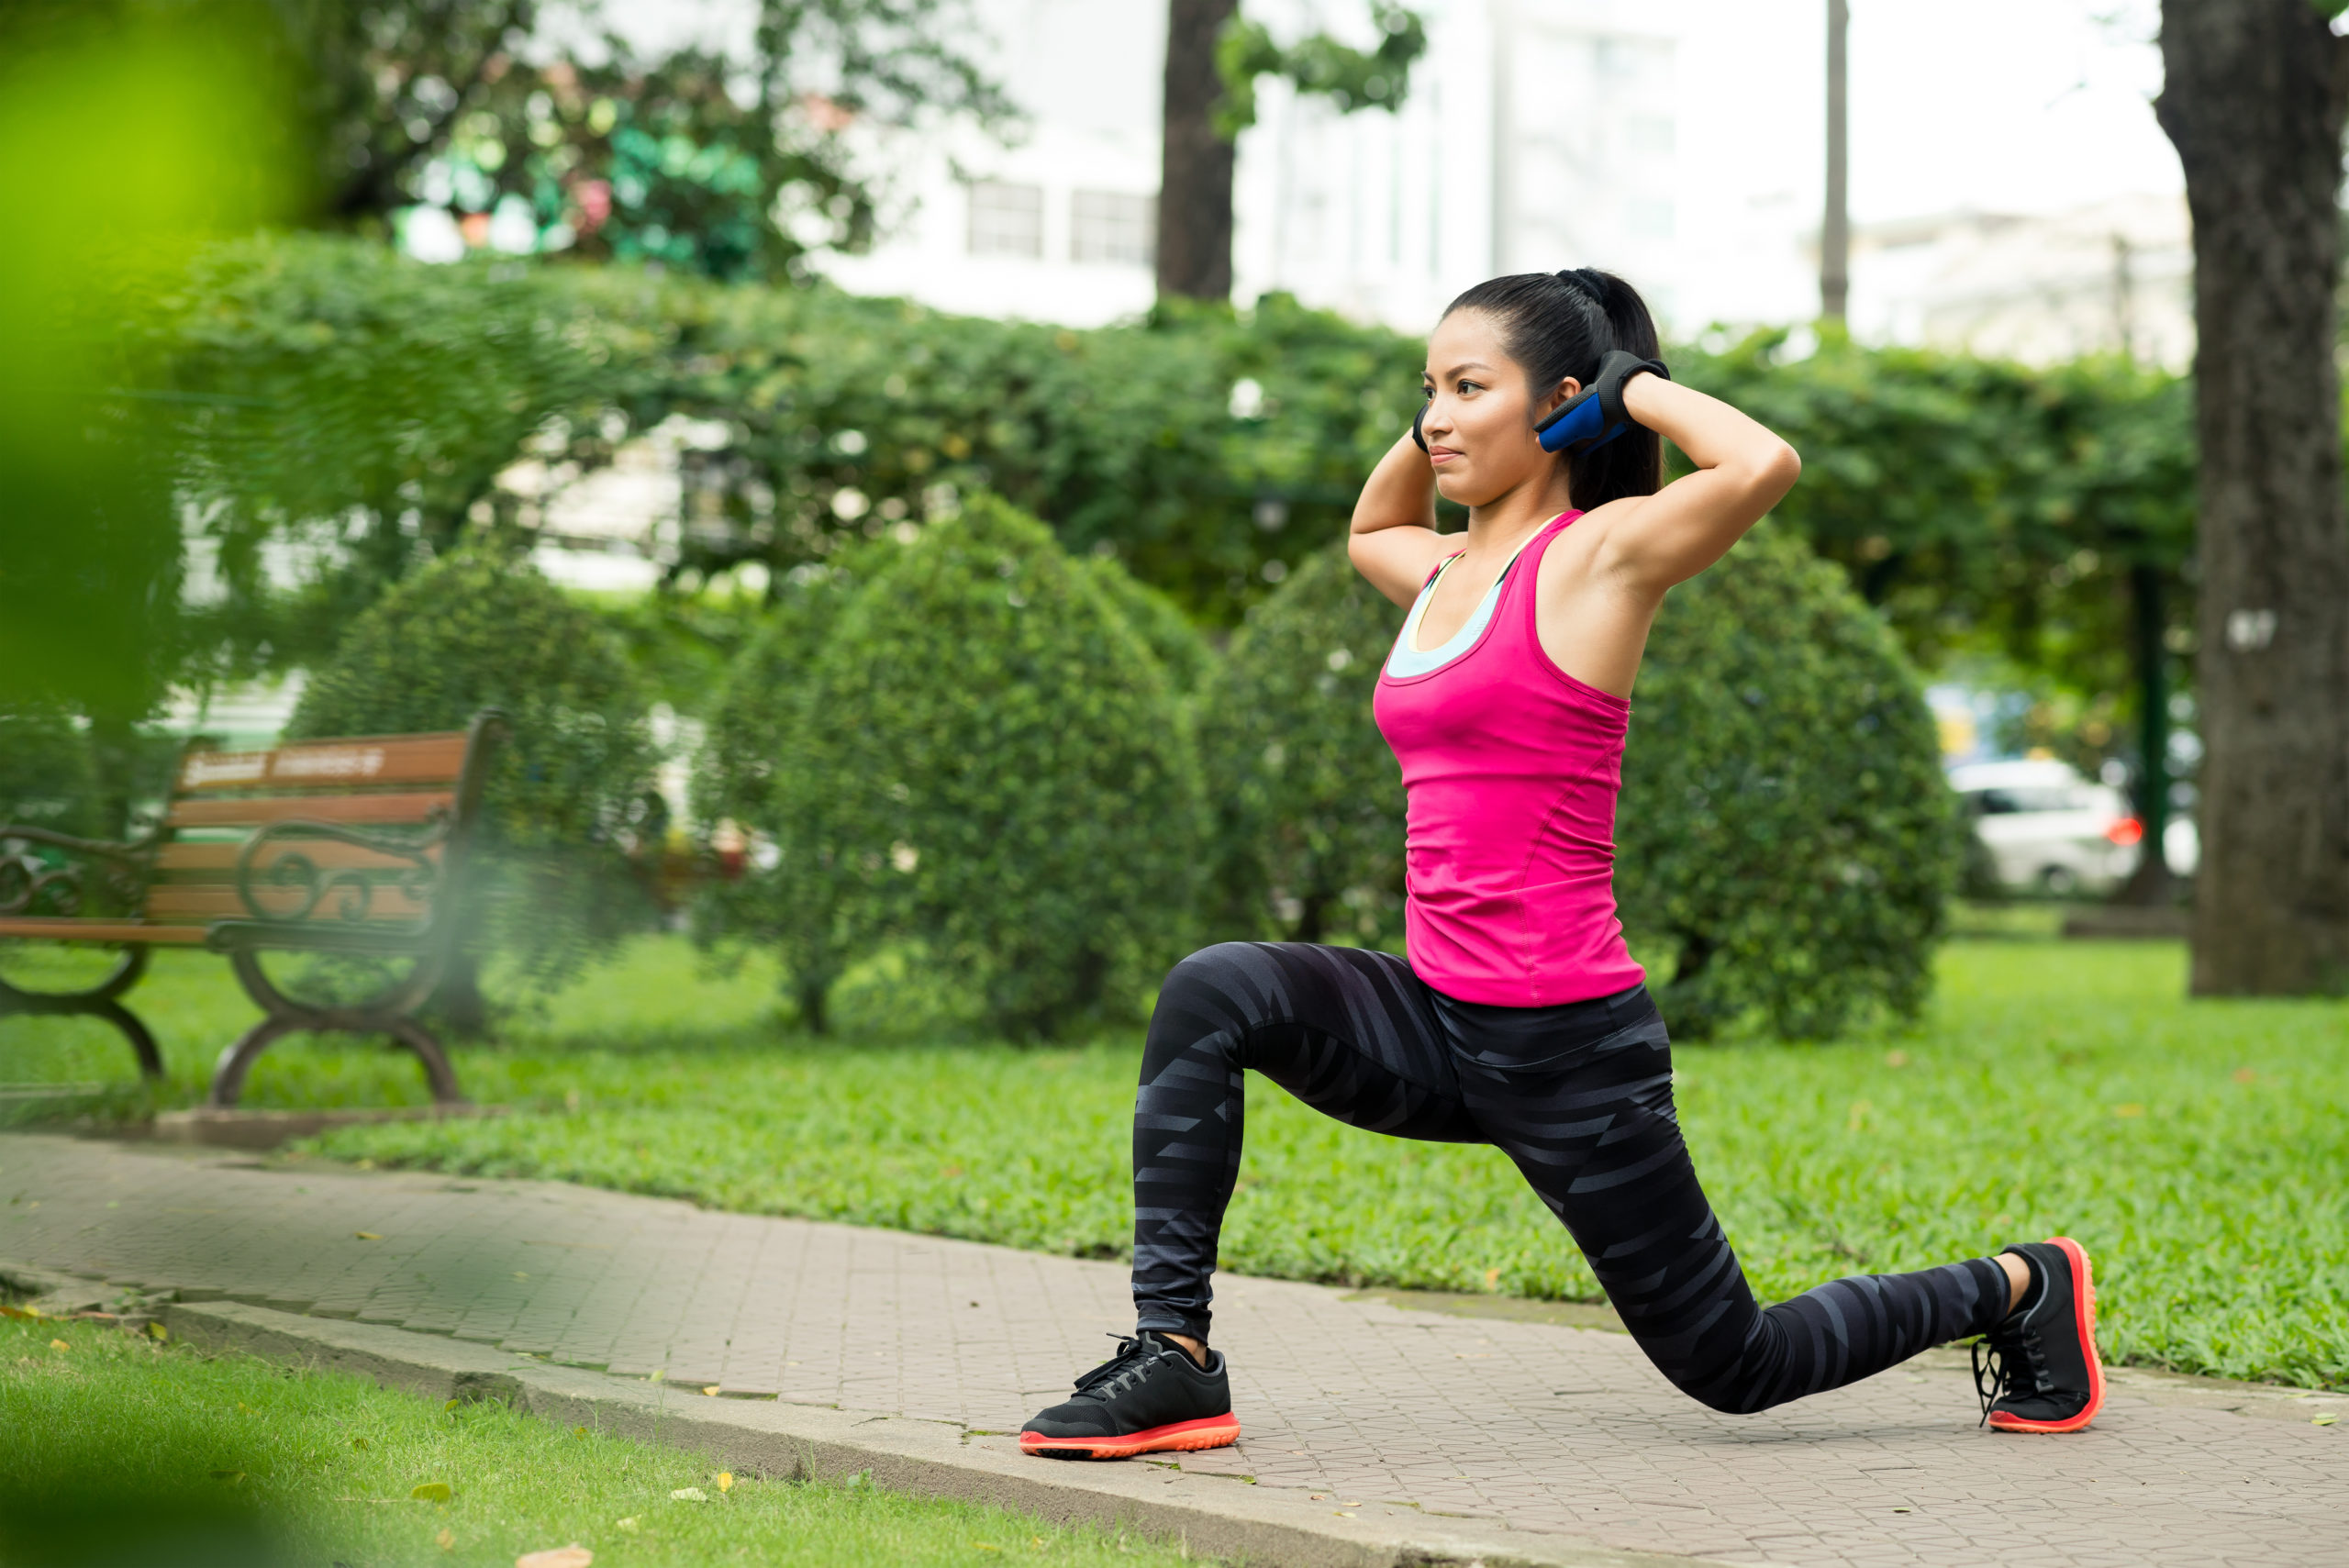 Похудение после бега. Тренировка на улице. Фитнес тренировка на улице. Занятие спортом на улице. Спортивная девушка на улице.